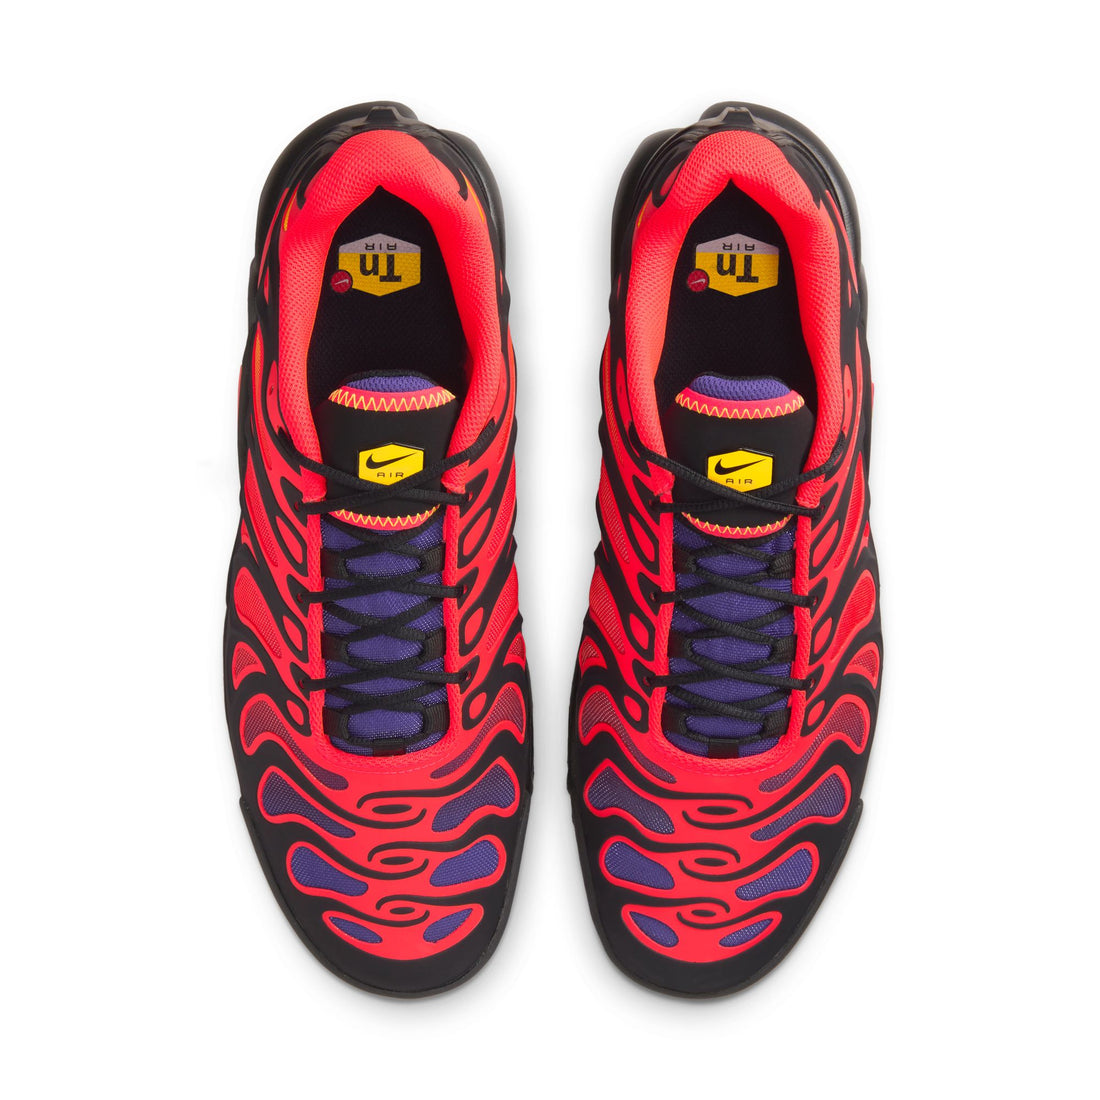 Nike Air Max Plus Drift (Black/Bright Crimson)